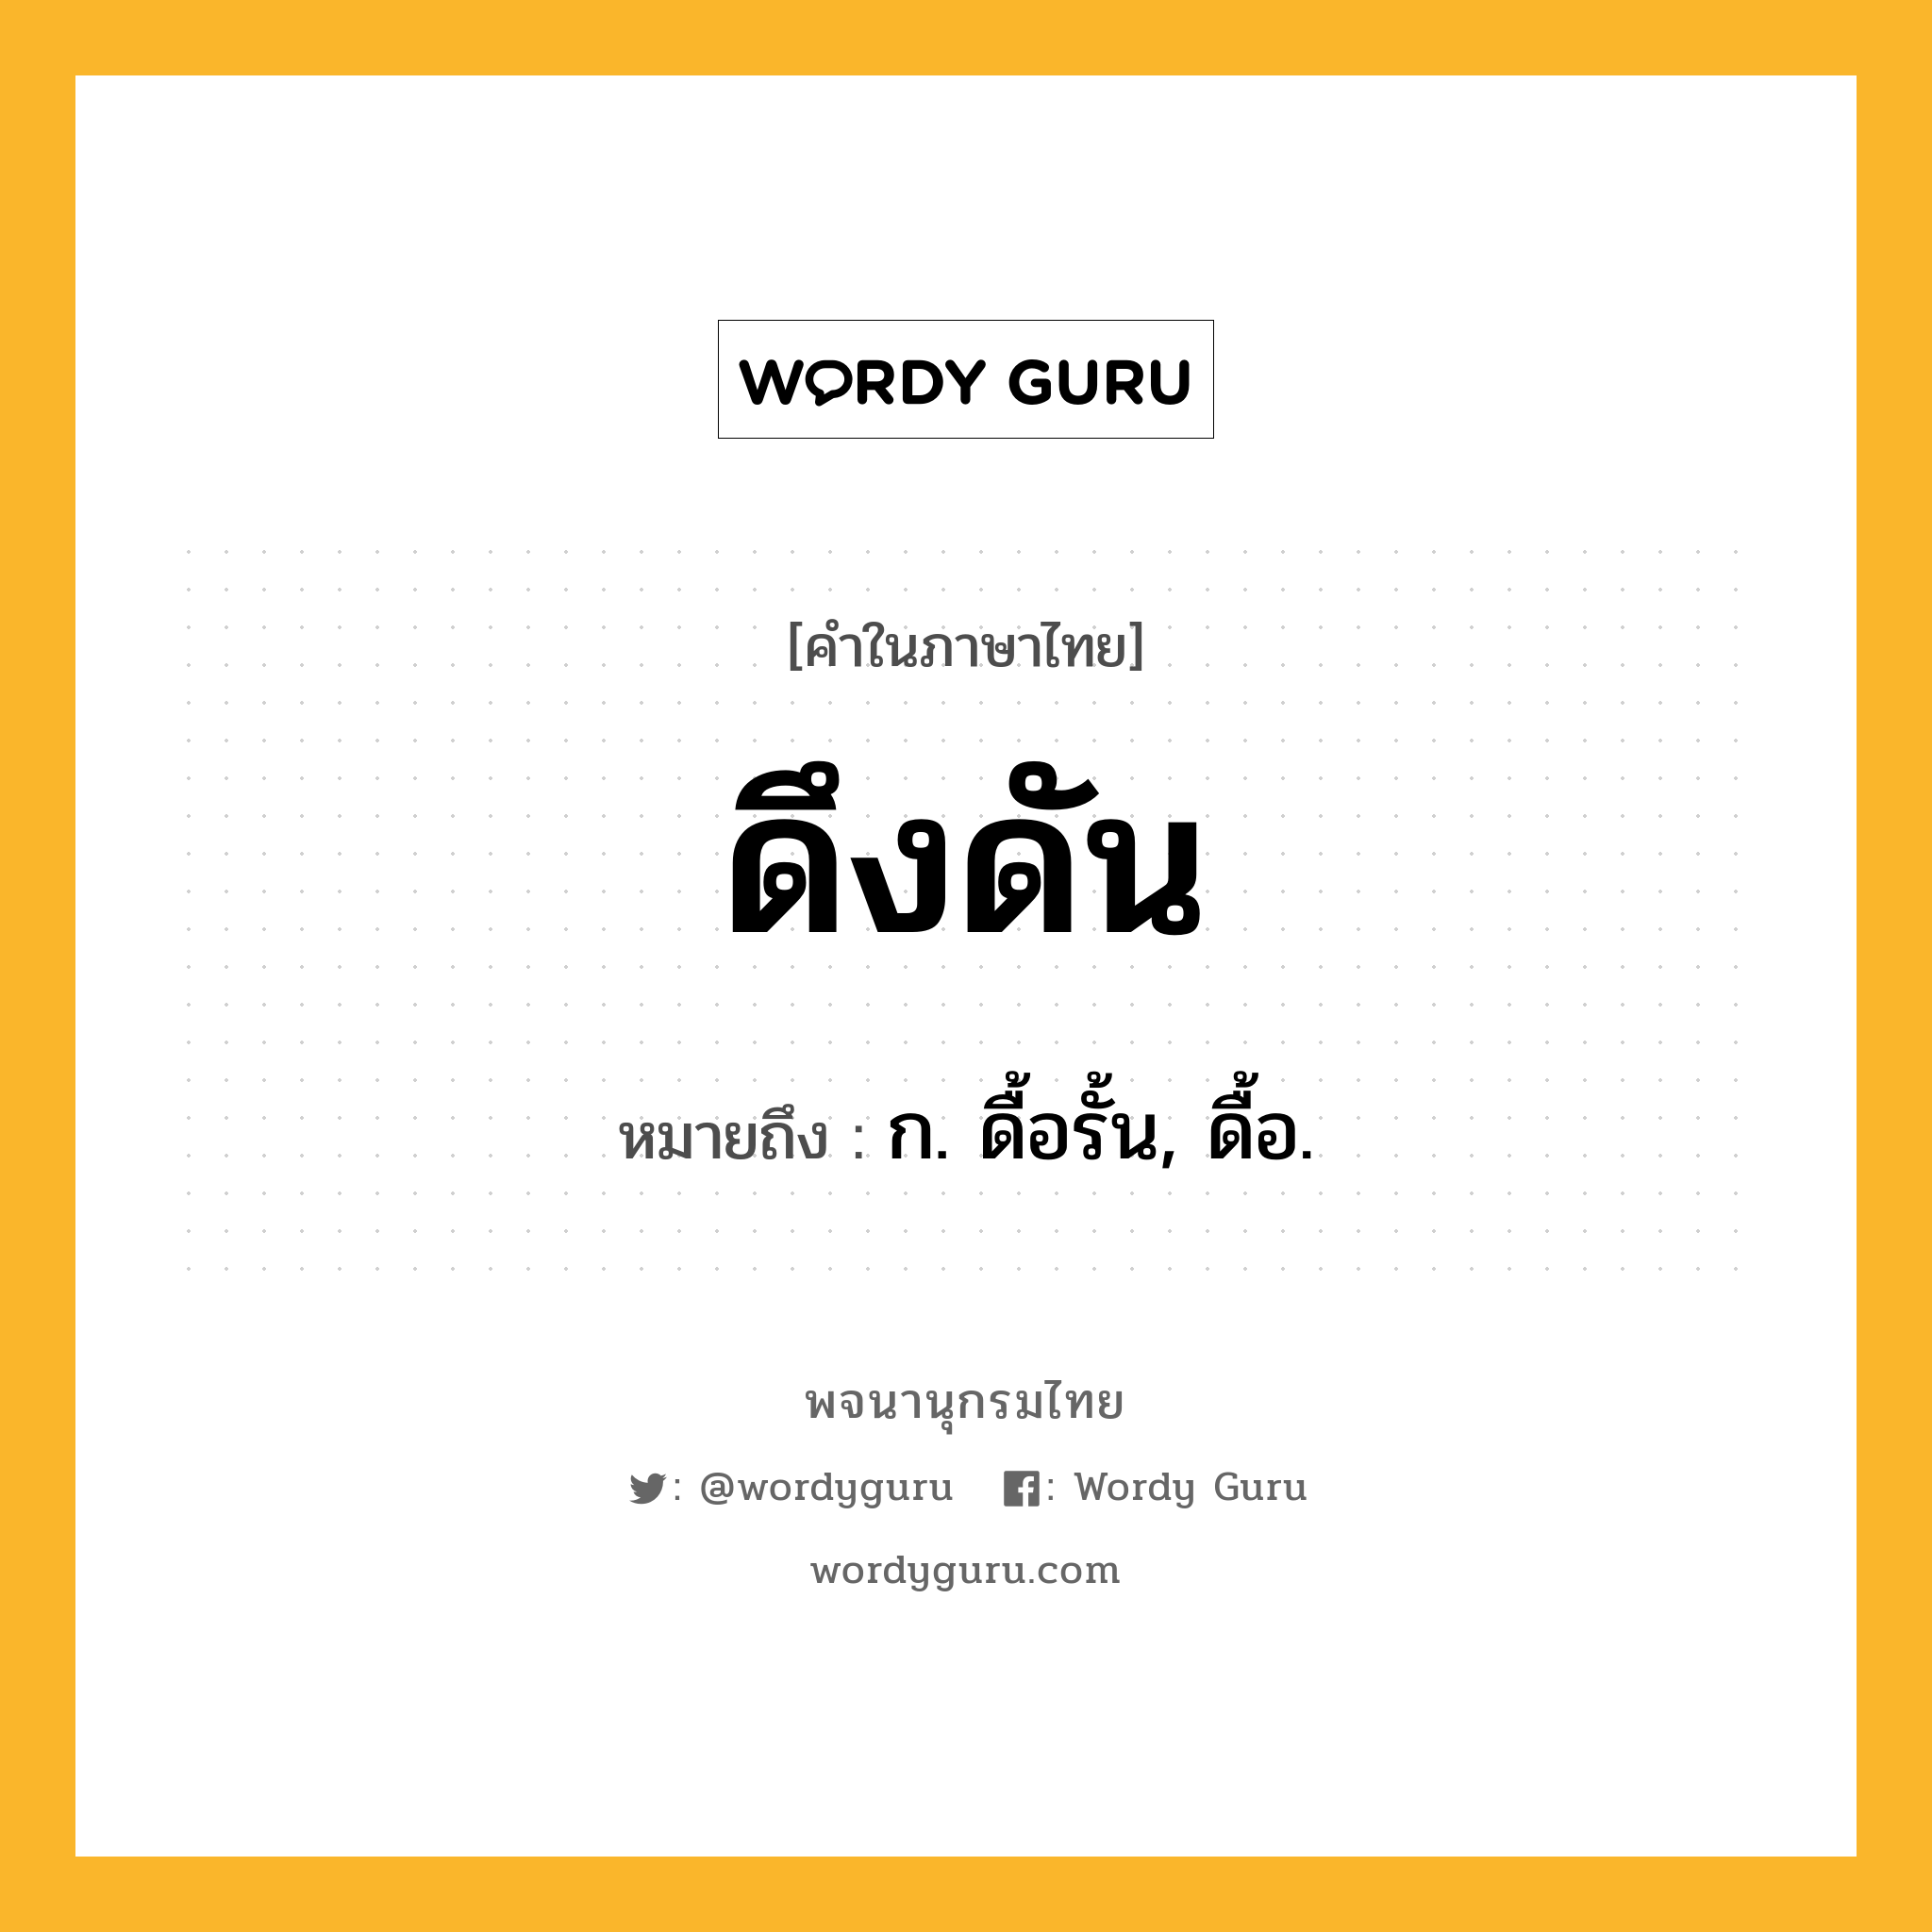 ดึงดัน ความหมาย หมายถึงอะไร?, คำในภาษาไทย ดึงดัน หมายถึง ก. ดื้อรั้น, ดื้อ.